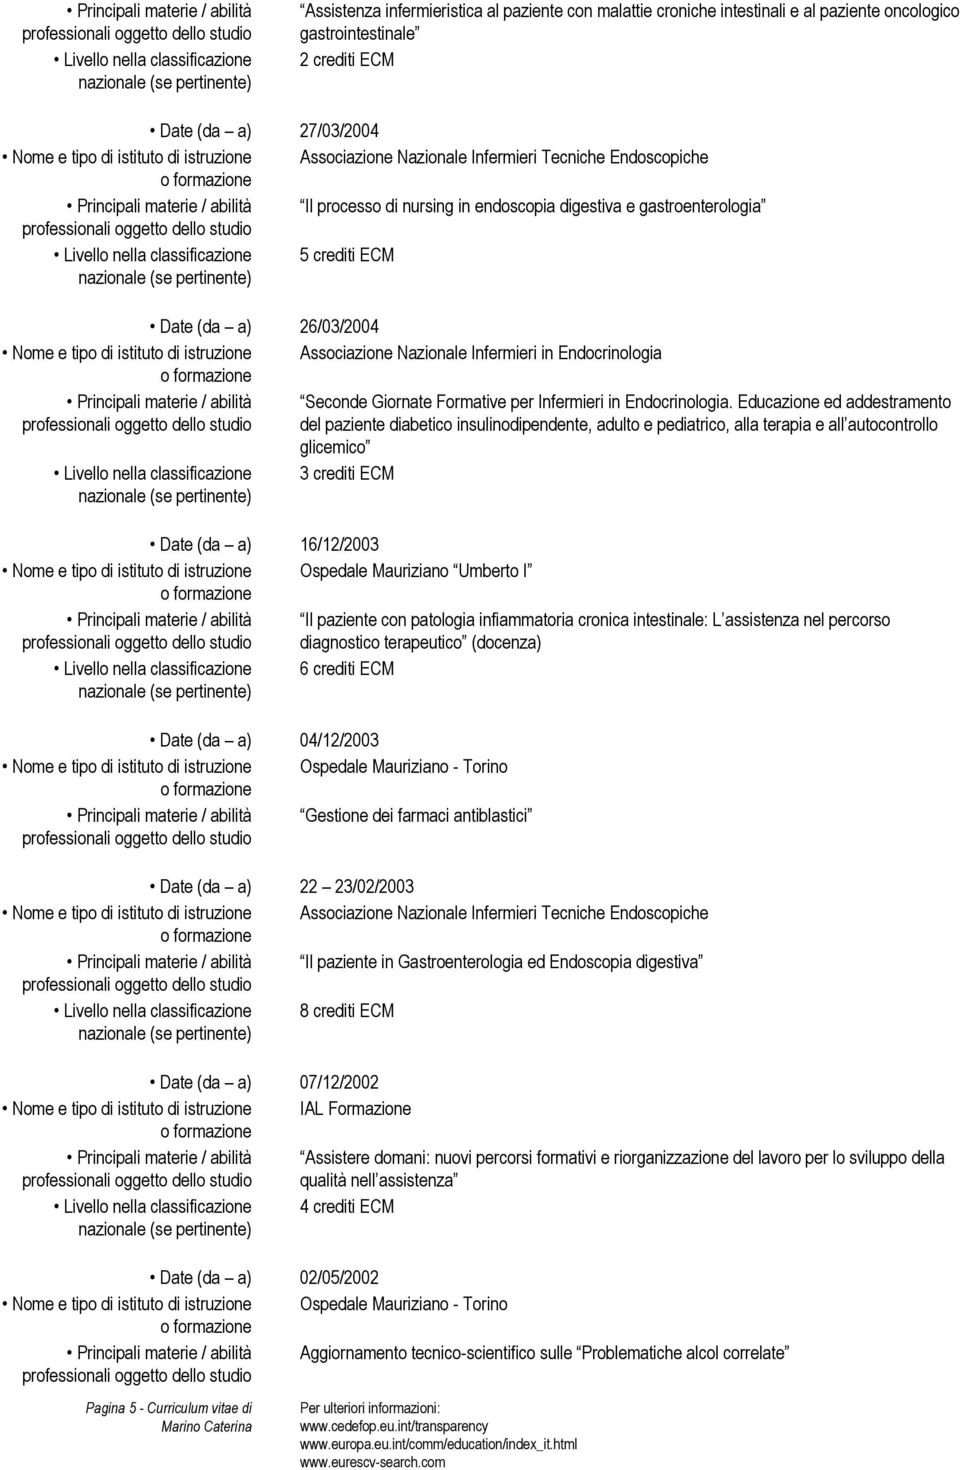 gastroenterologia Livello nella classificazione 5 crediti ECM Date (da a) 26/03/2004 Principali materie / abilità Seconde Giornate Formative per Infermieri in Endocrinologia.